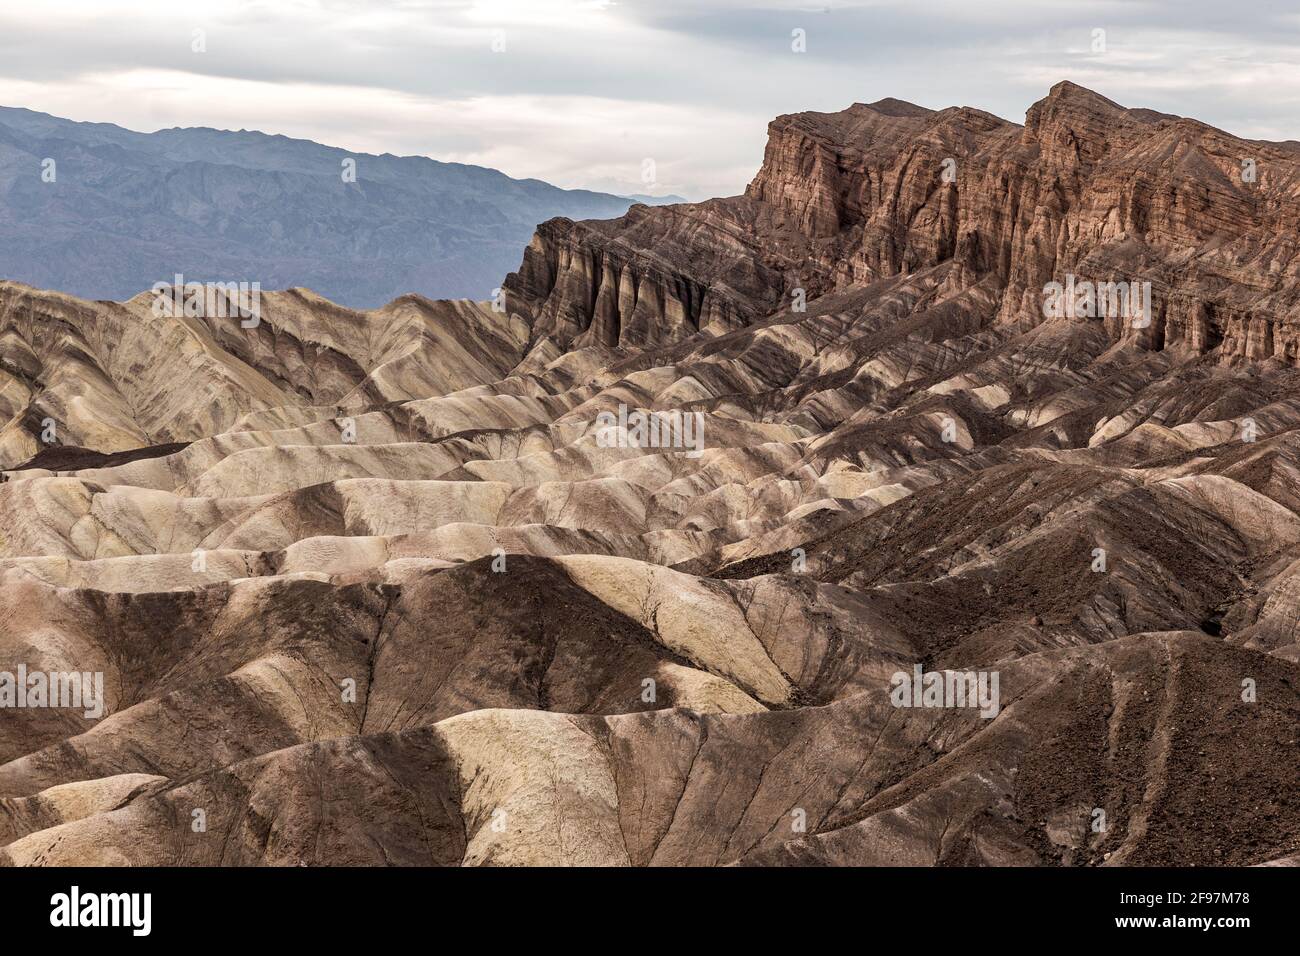 Un pittoresco deserto-scena con pesantemente eroso creste prelevati presso il ben noto Zabriskie Point, Parco Nazionale della Valle della Morte, CALIFORNIA, STATI UNITI D'AMERICA Foto Stock